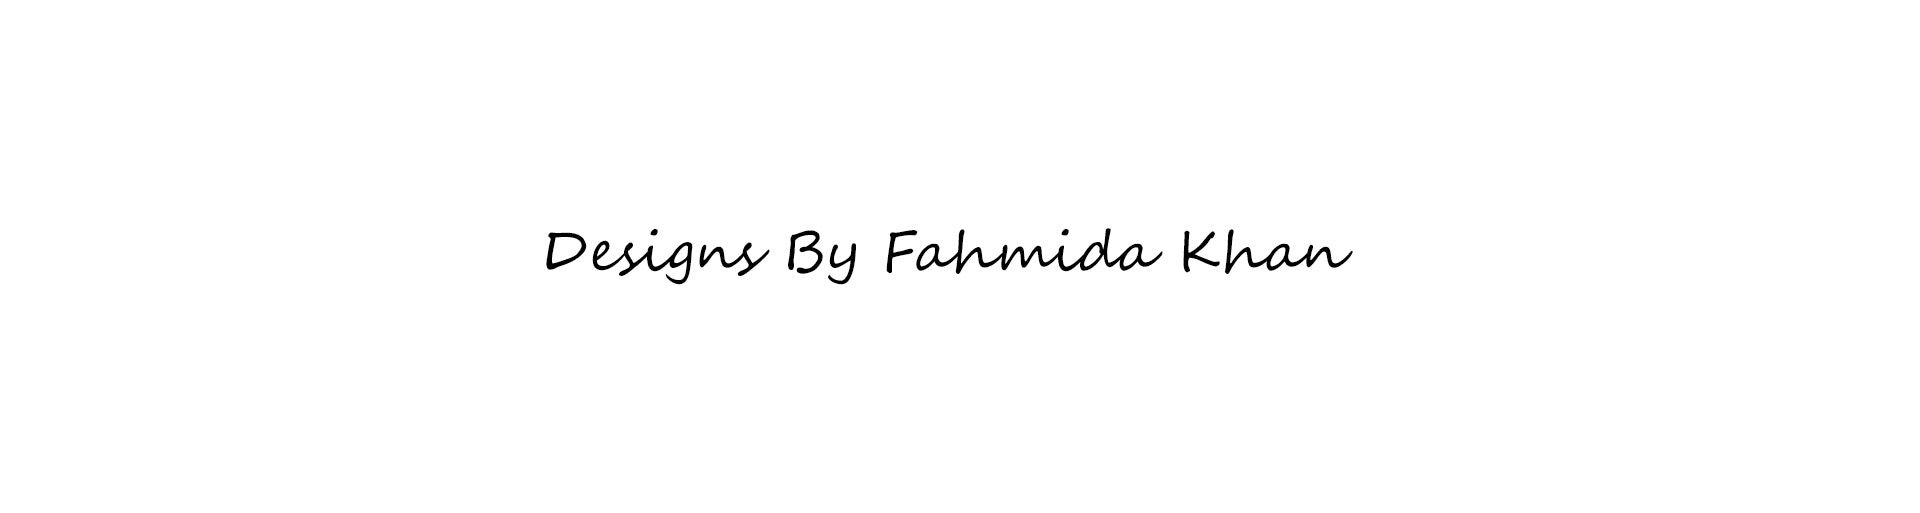 Fahmida Khan